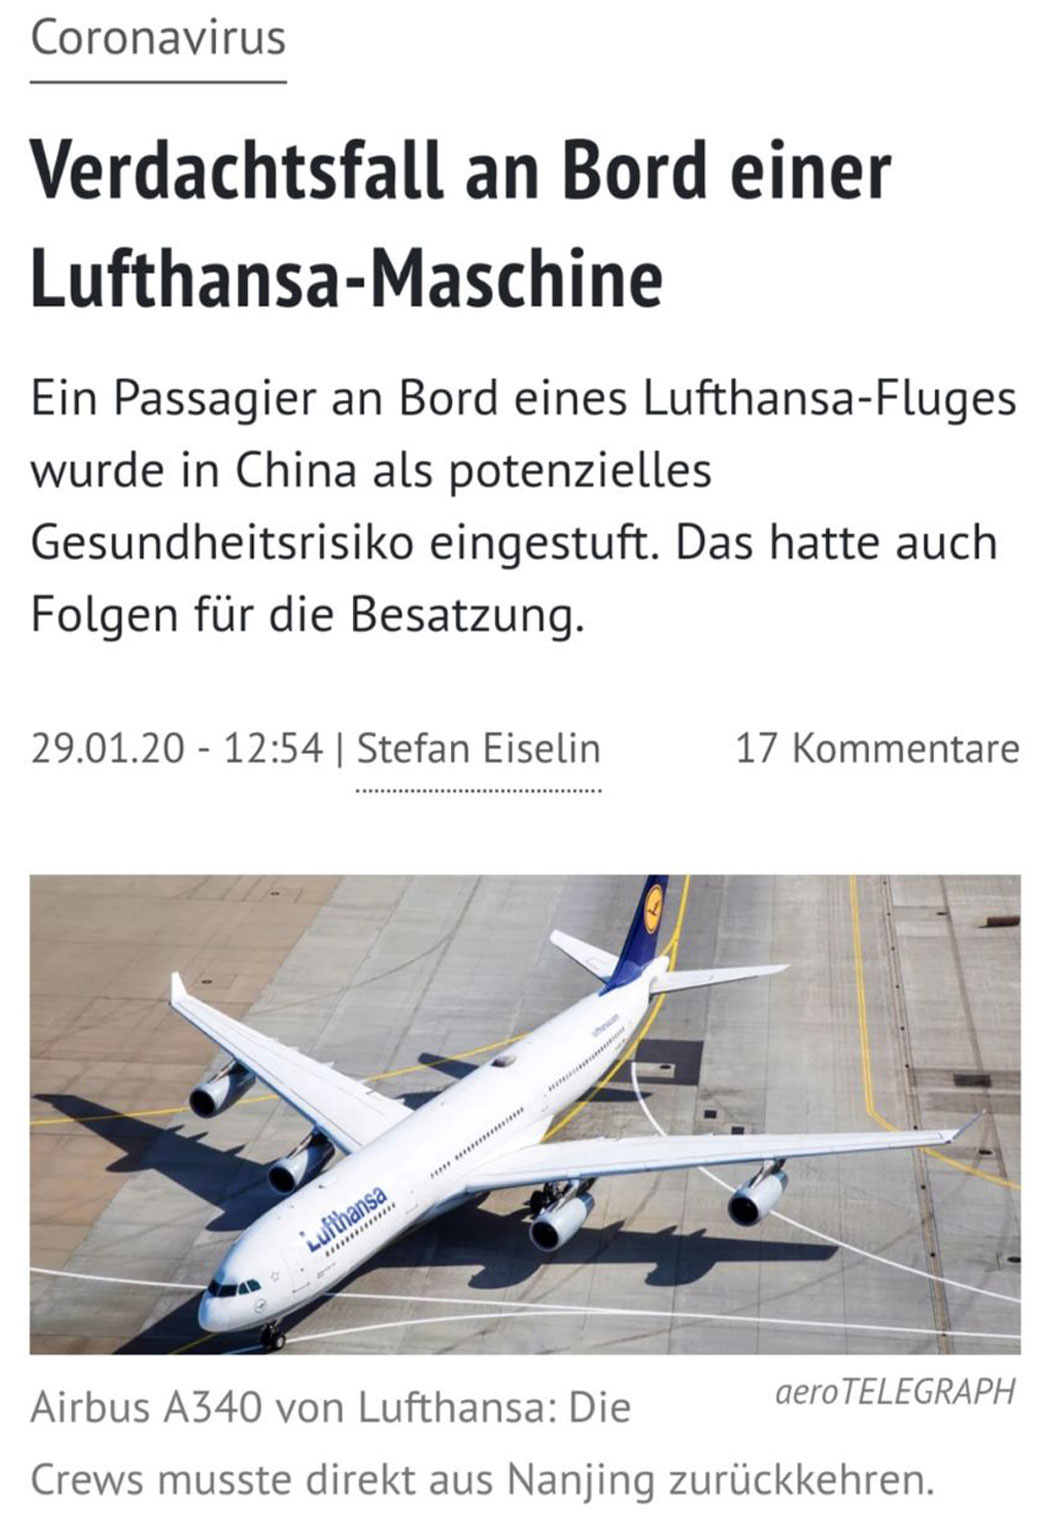 Verdachtsfall an Bord einer Lufthansa-Maschine